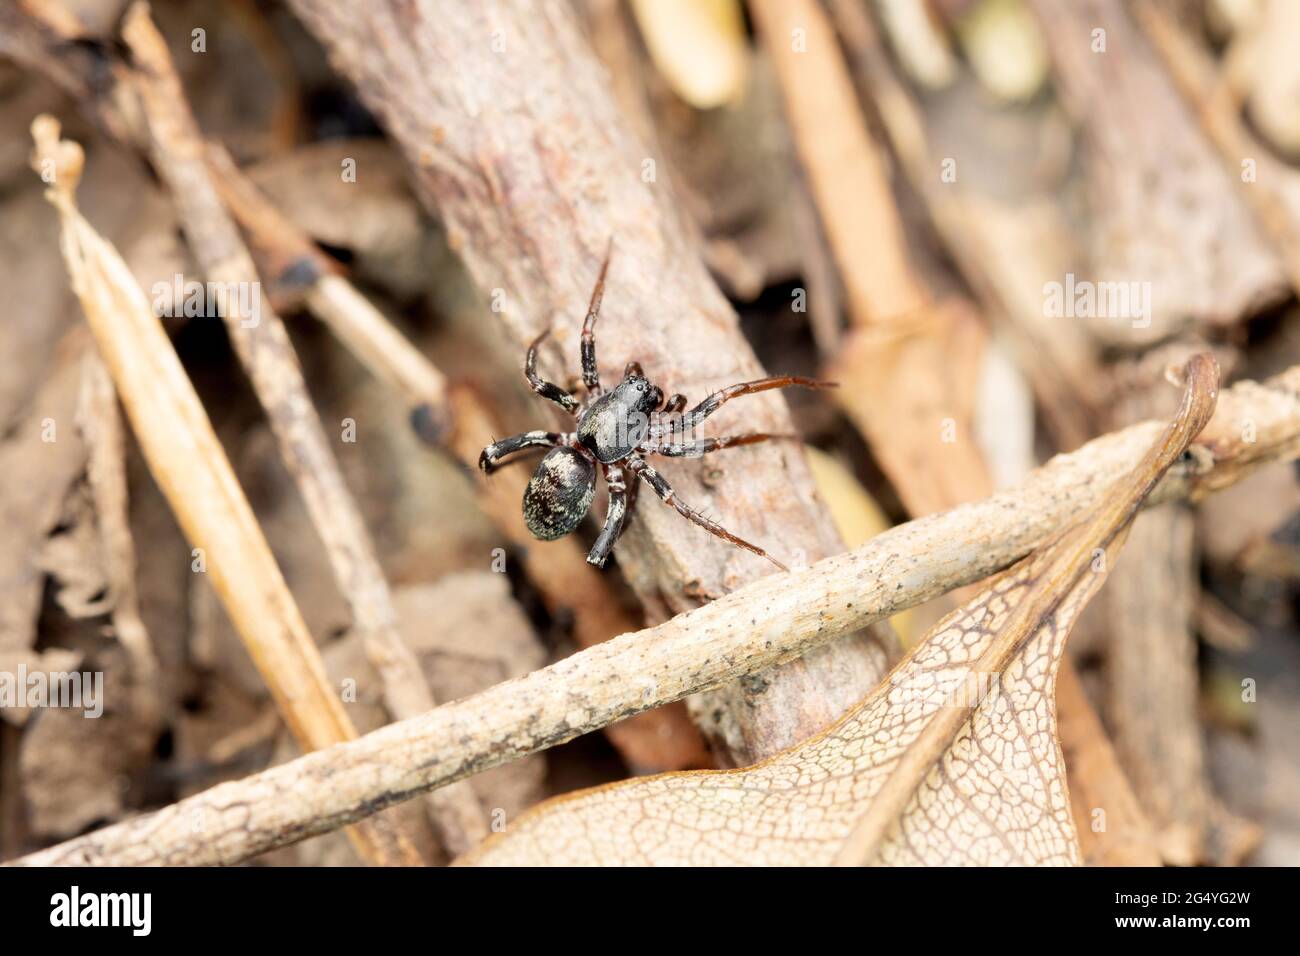 Ant like ground spider, Cambalida dippenaarae, Satara, Maharashtra, India Stock Photo